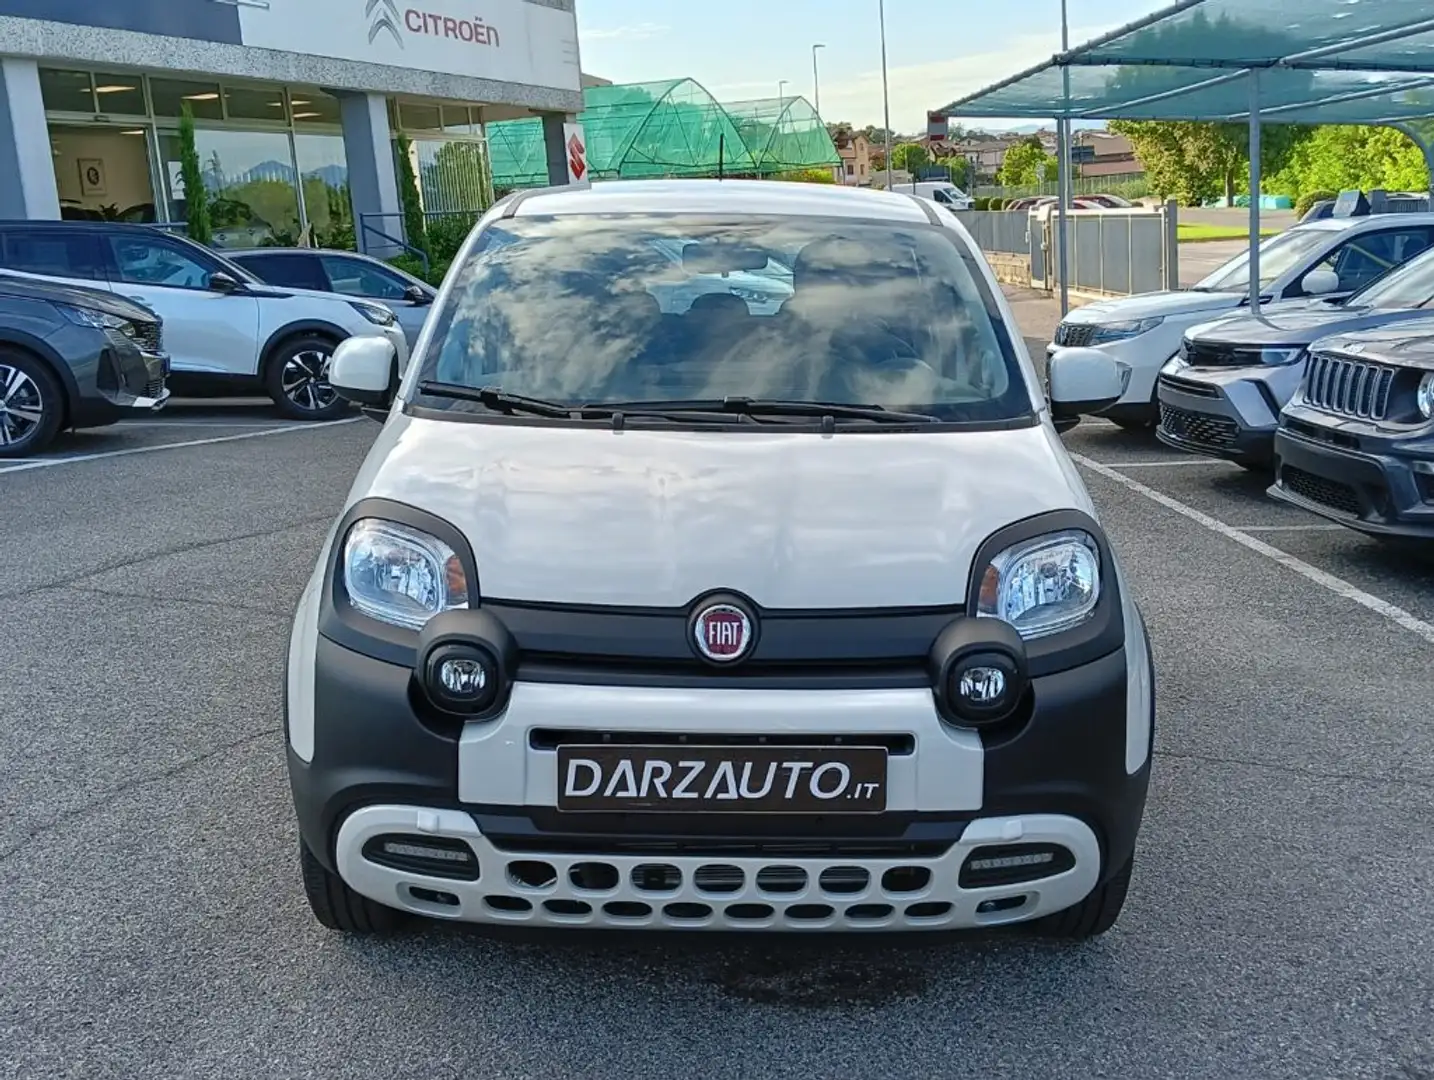 Fiat Panda usata a Desenzano del Garda – Brescia per € 16.000,-